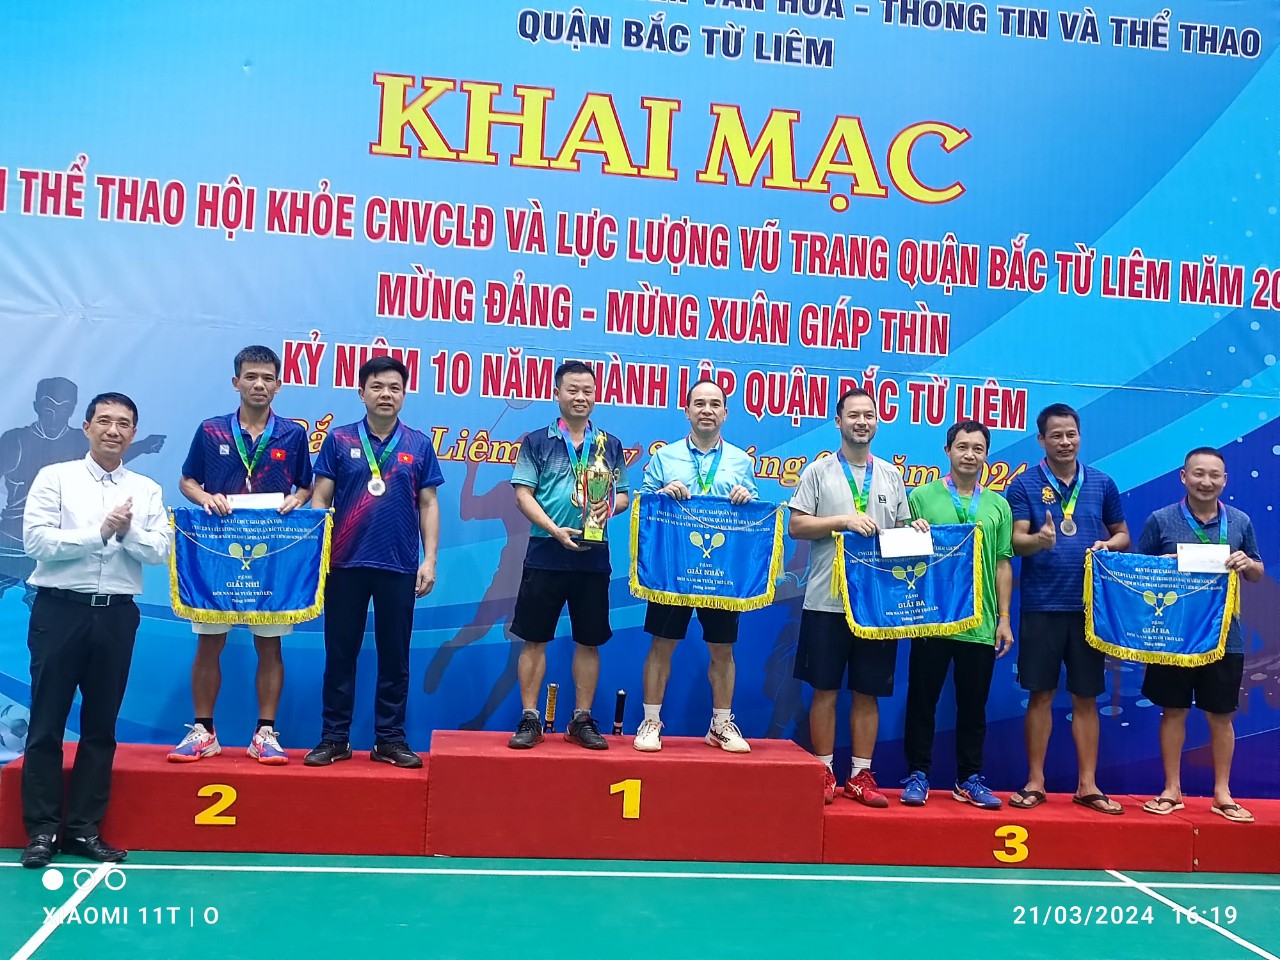 Trường Đại học Công Nghiệp Hà Nội tham gia thi đấu giải thể thao Hội khỏe CNVCLĐ và lực lượng vũ trang quận Bắc Từ Liêm năm 2024.